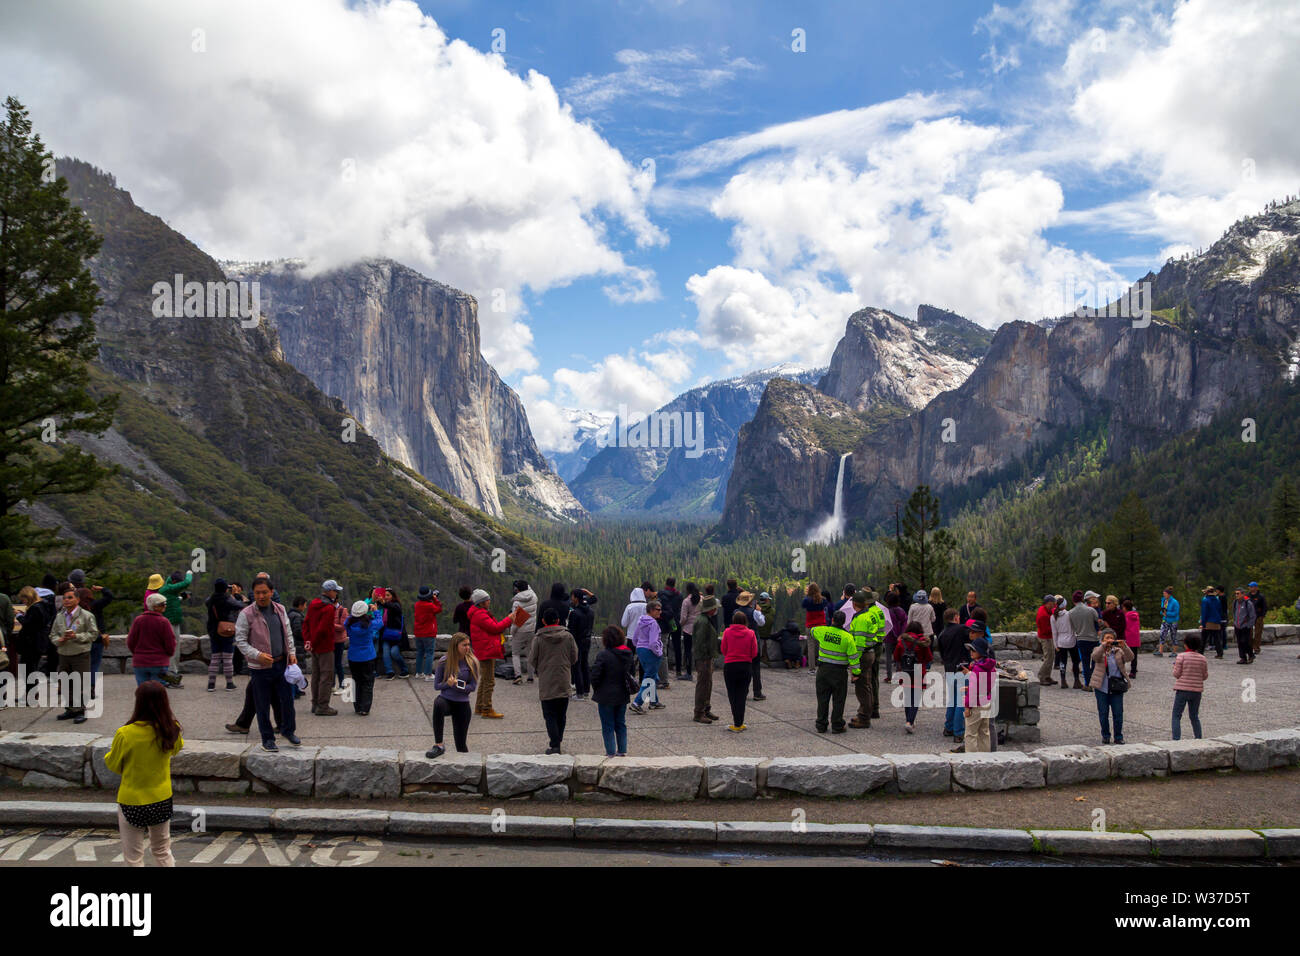 Les personnes bénéficiant de l'Grand paysage avec des montagnes et des cascades à tunnel view in Yosemite Nati Banque D'Images